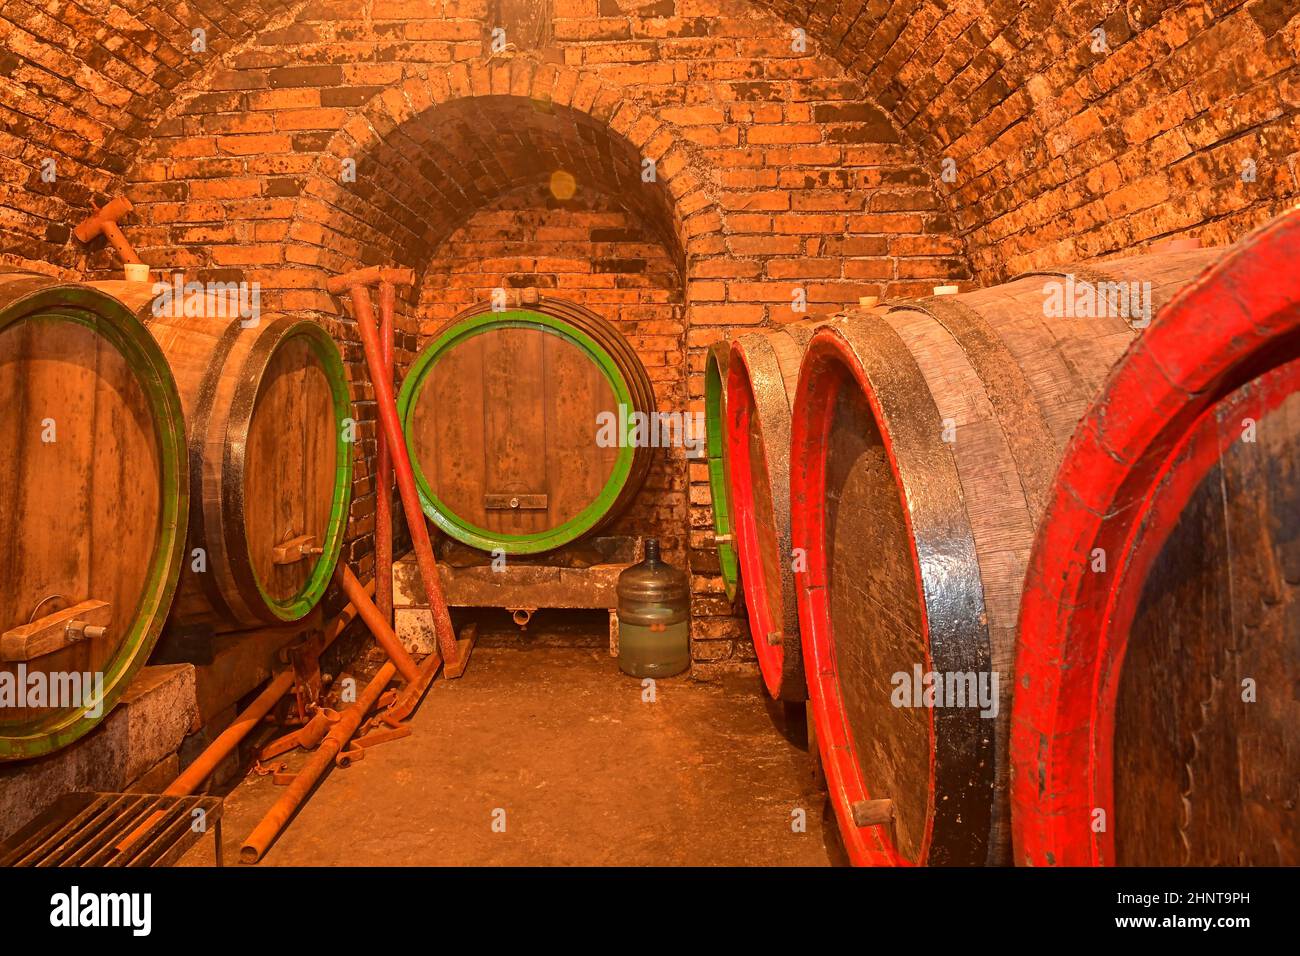 Barriles de vino en una bodega, una antigua bodega con techos abovedados de ladrillo. Vinificación tradicional Foto de stock